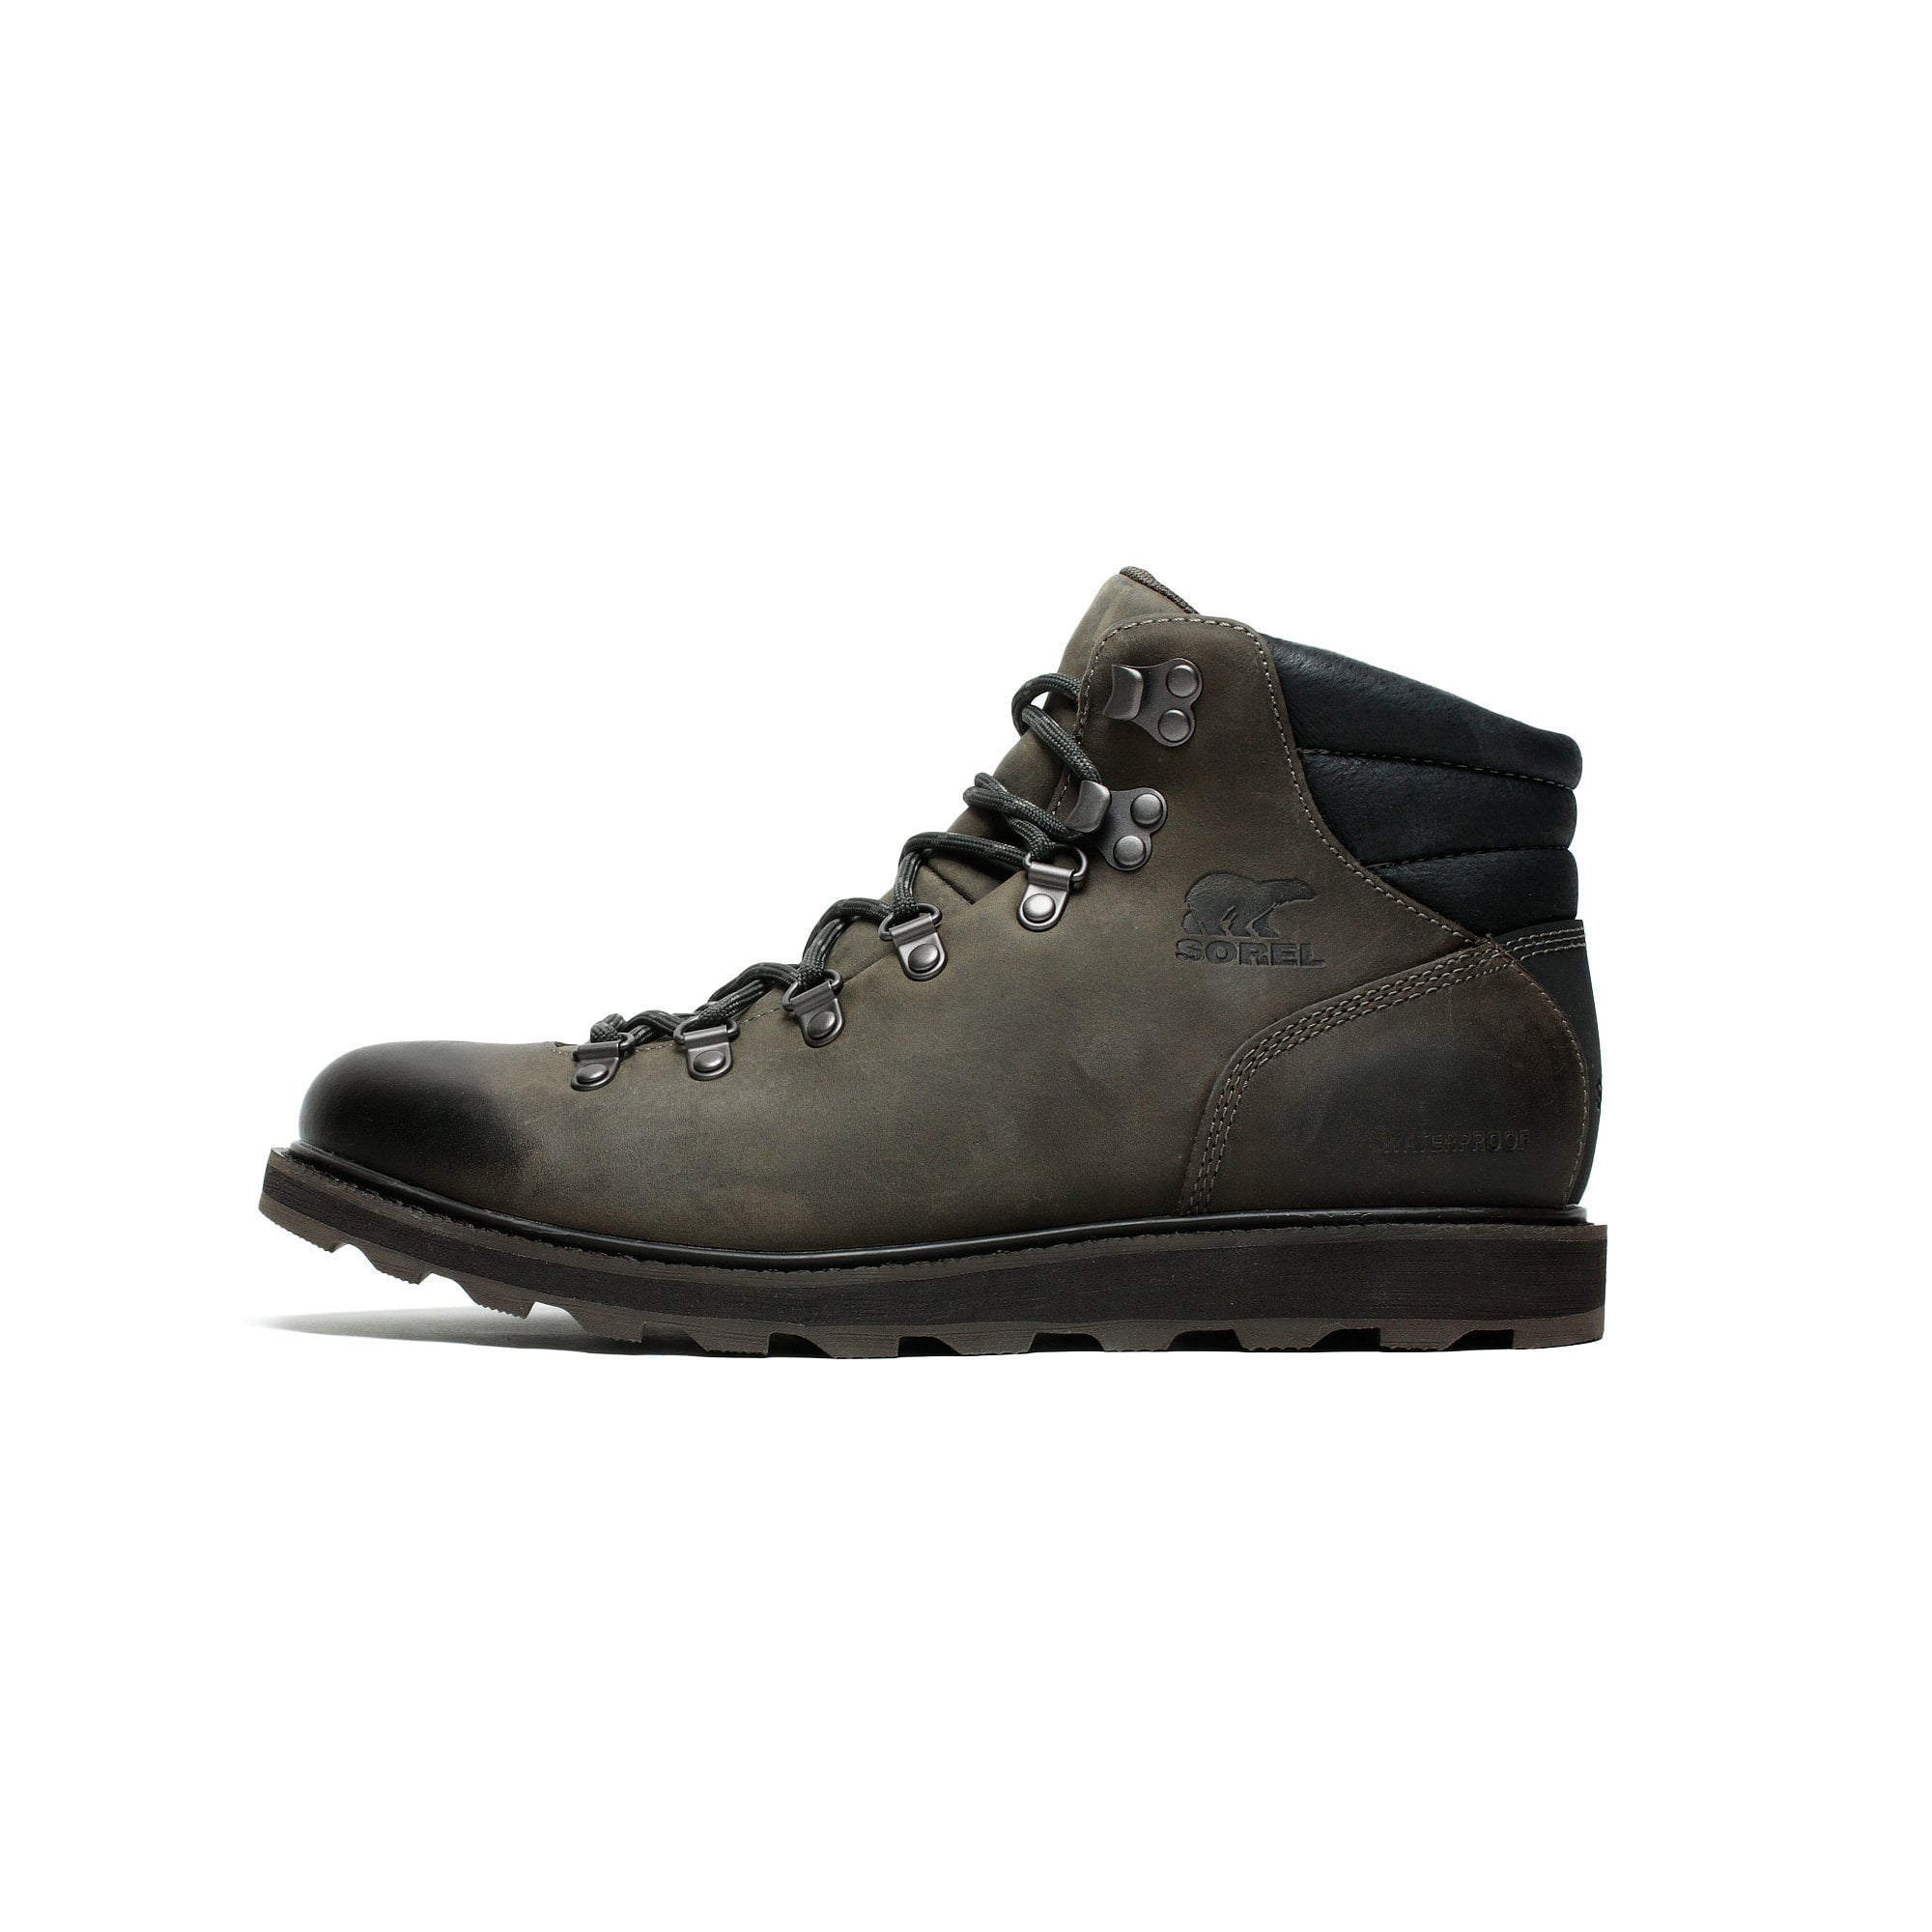 sorel men's madson hiker waterproof boot